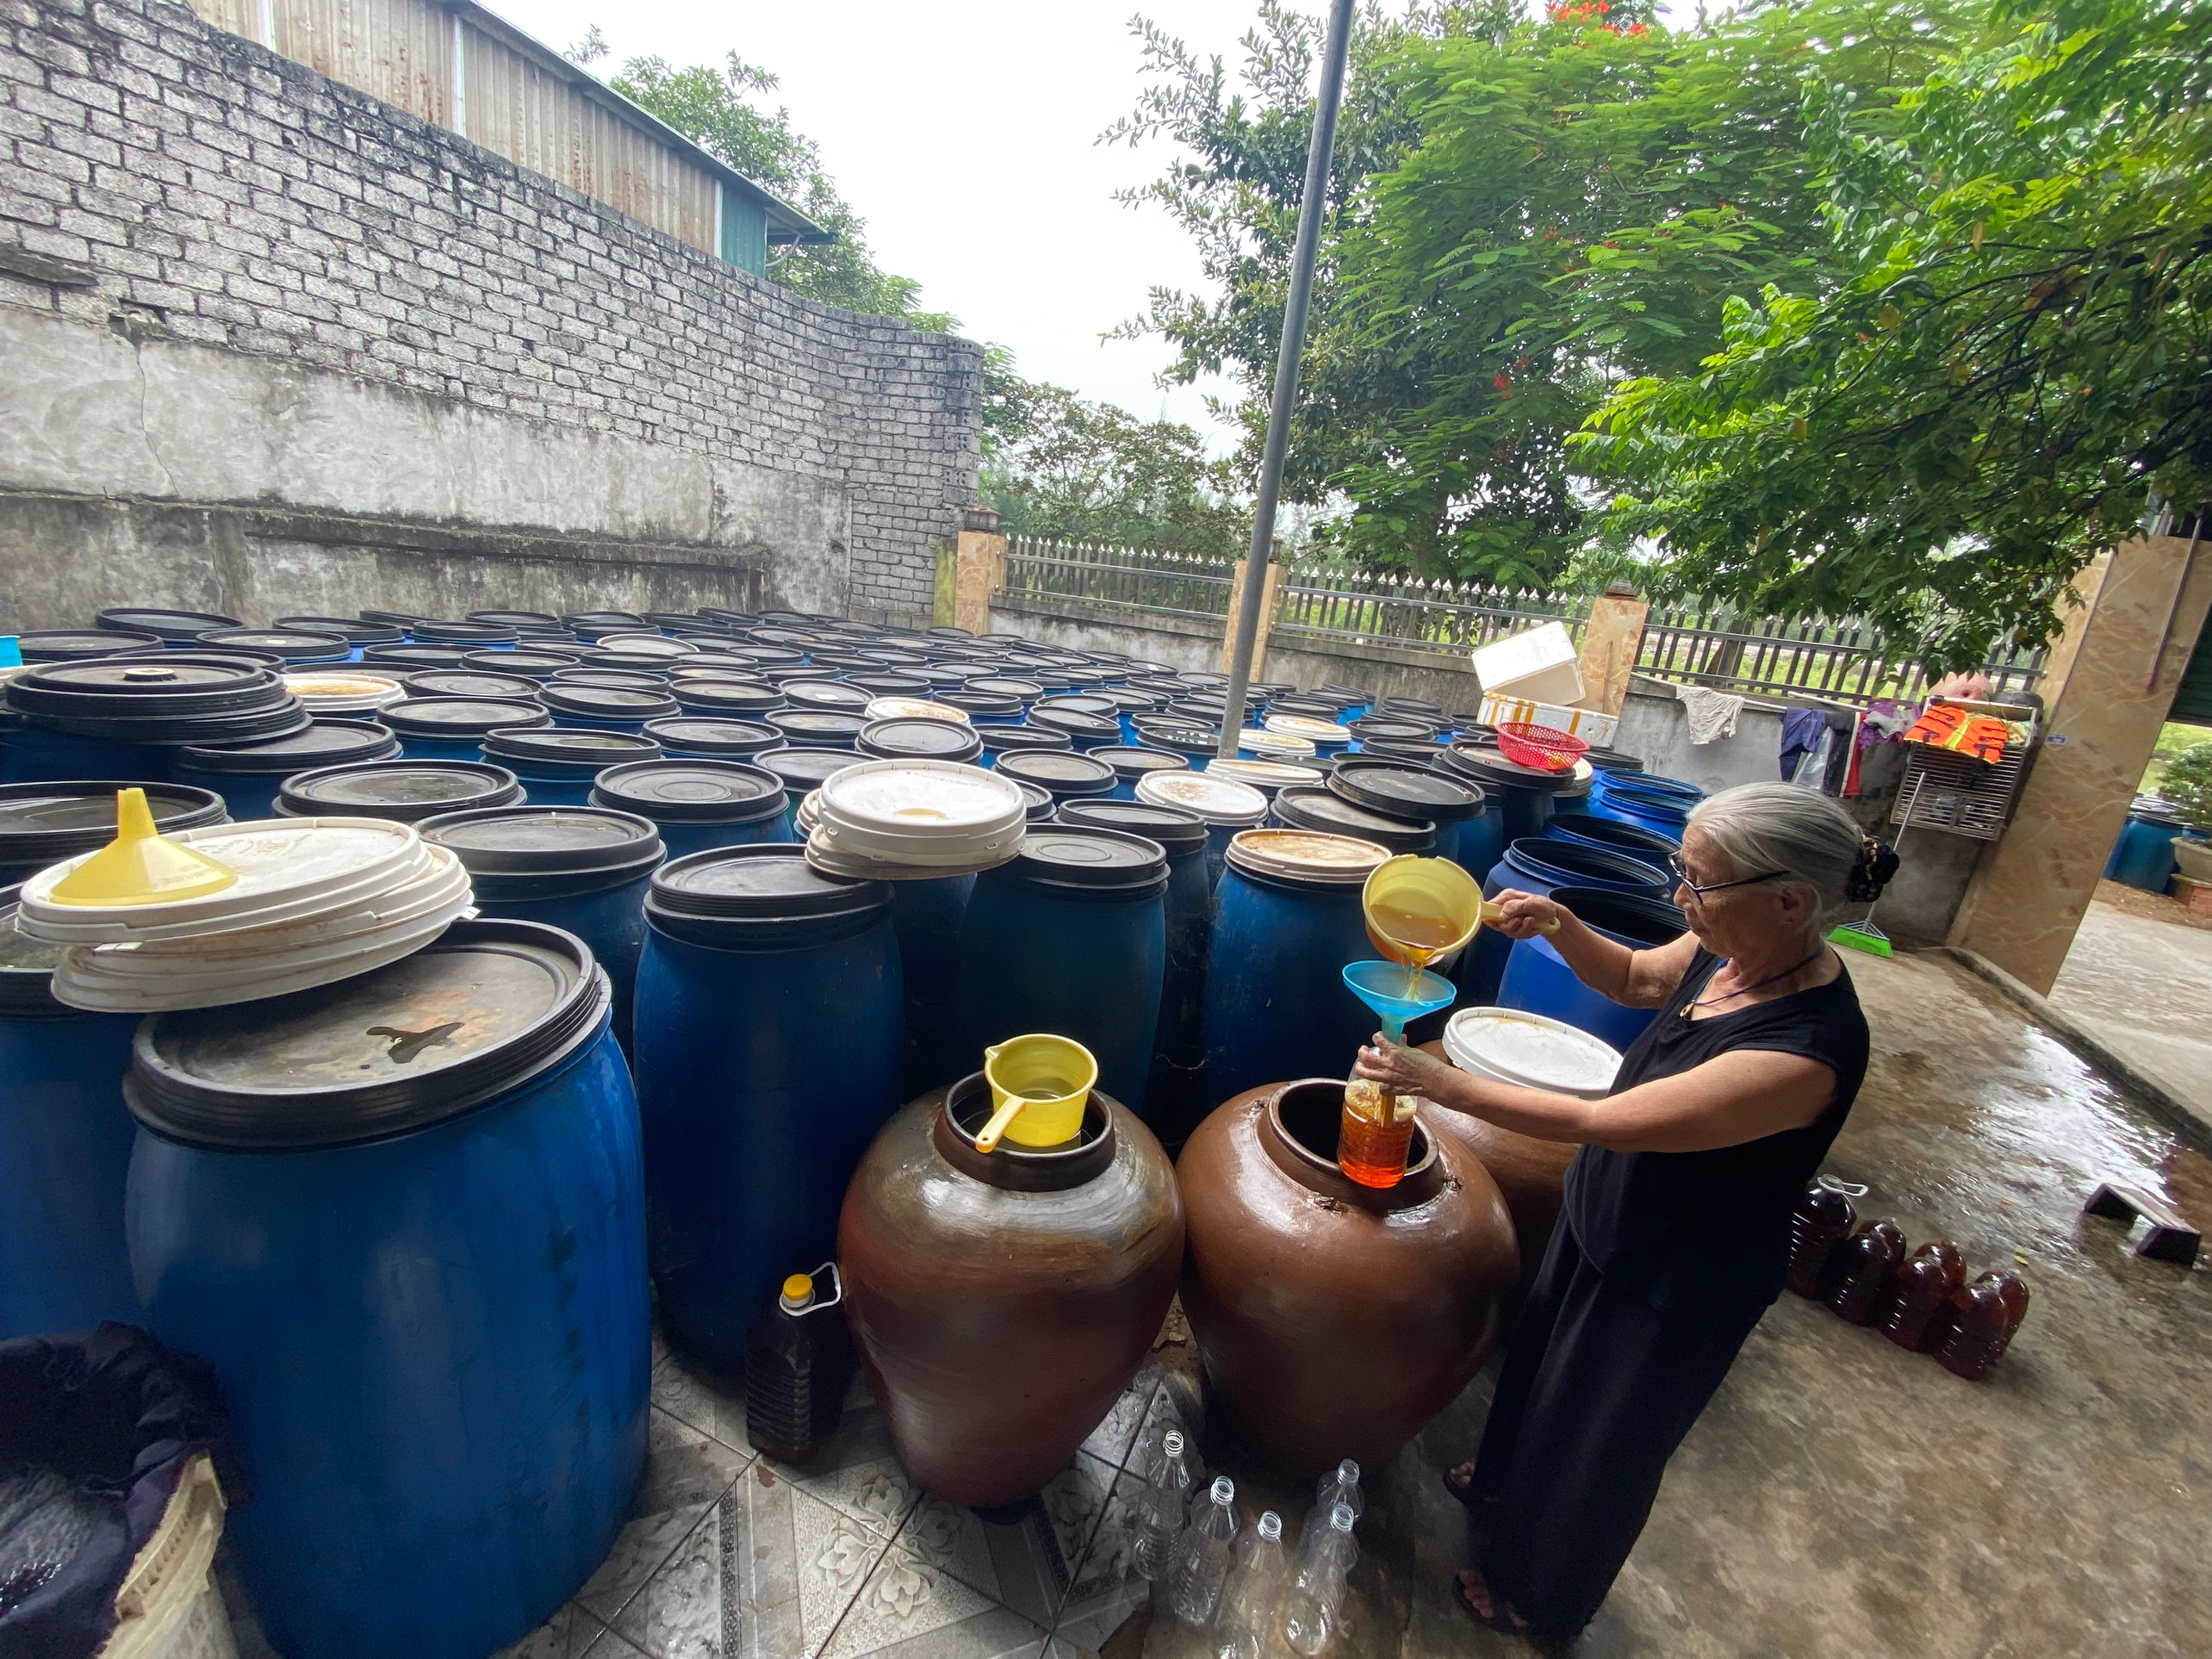 bna_chínhsản xuất nước mắm ở Quỳnh Ngọc  ảnh thu huyền.jpeg